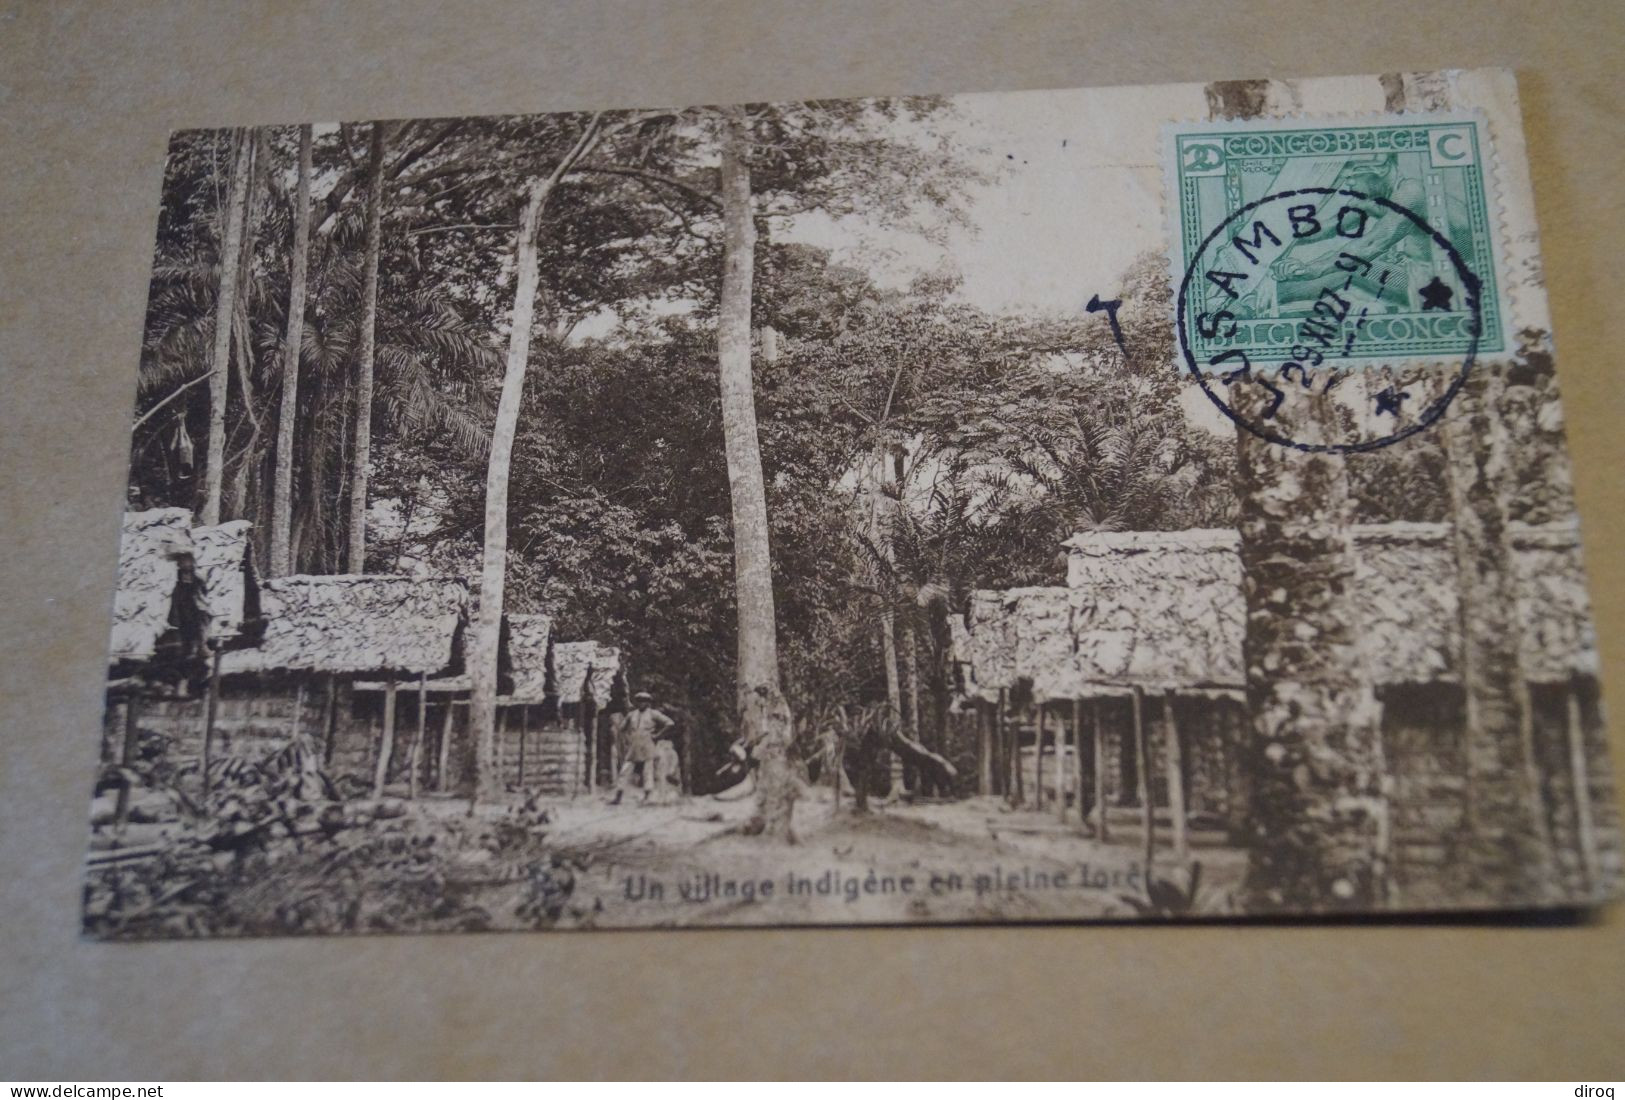 Congo Belge,village Indigène,oblitération De Lusambo 1927,Très Belle Ancienne Carte,à Voyagé,pour Collection - Belgian Congo